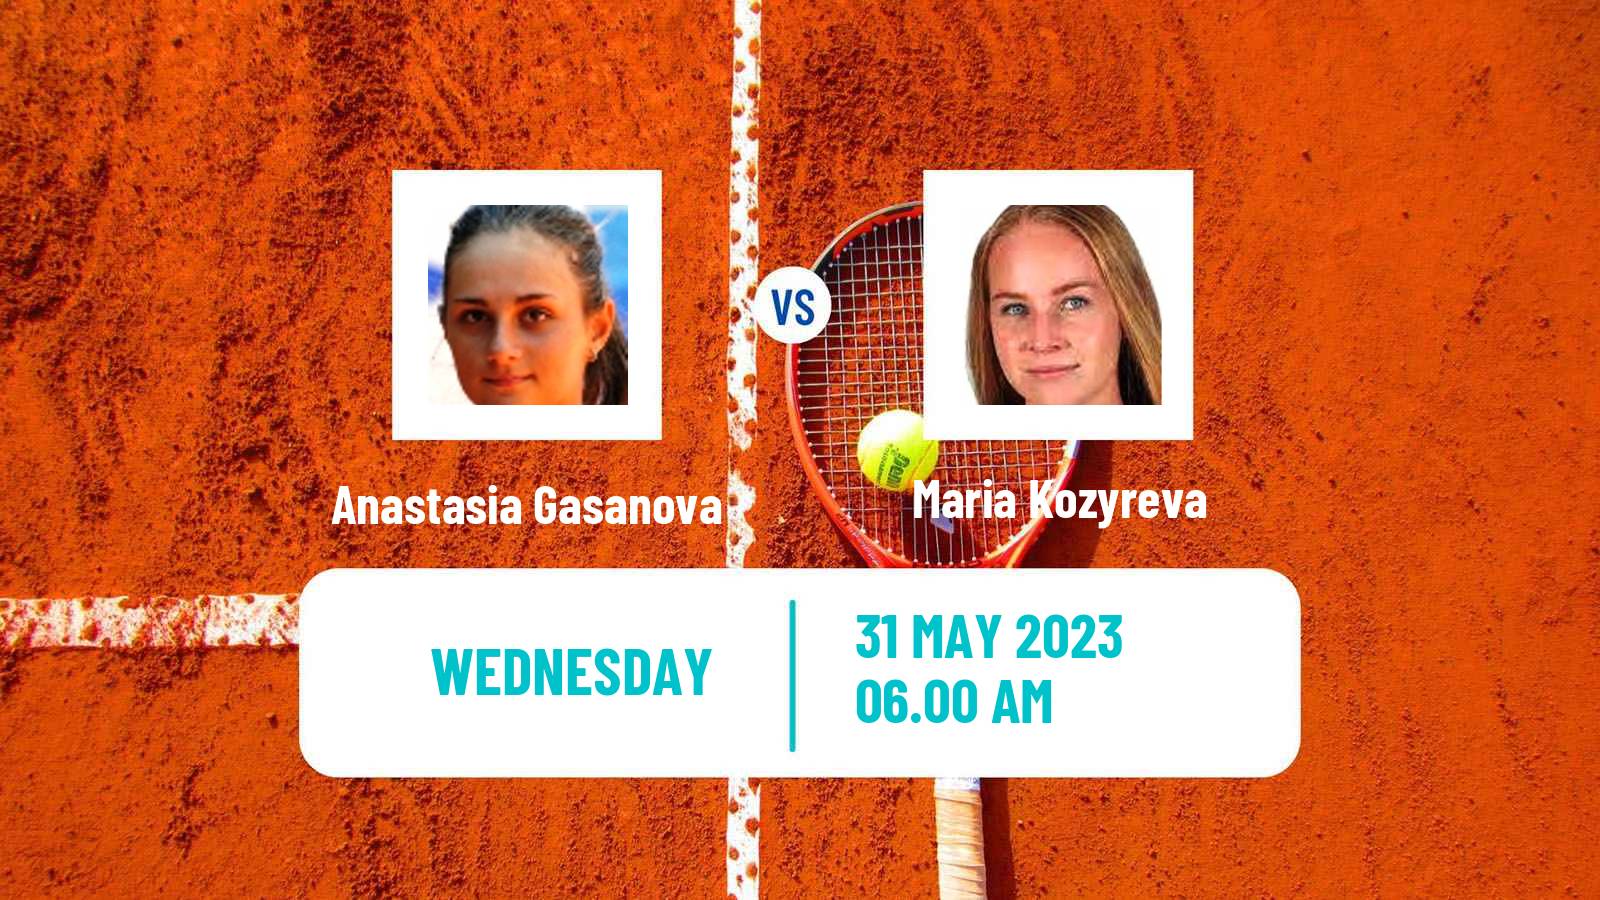 Tennis ITF W25 La Marsa Women Anastasia Gasanova - Maria Kozyreva